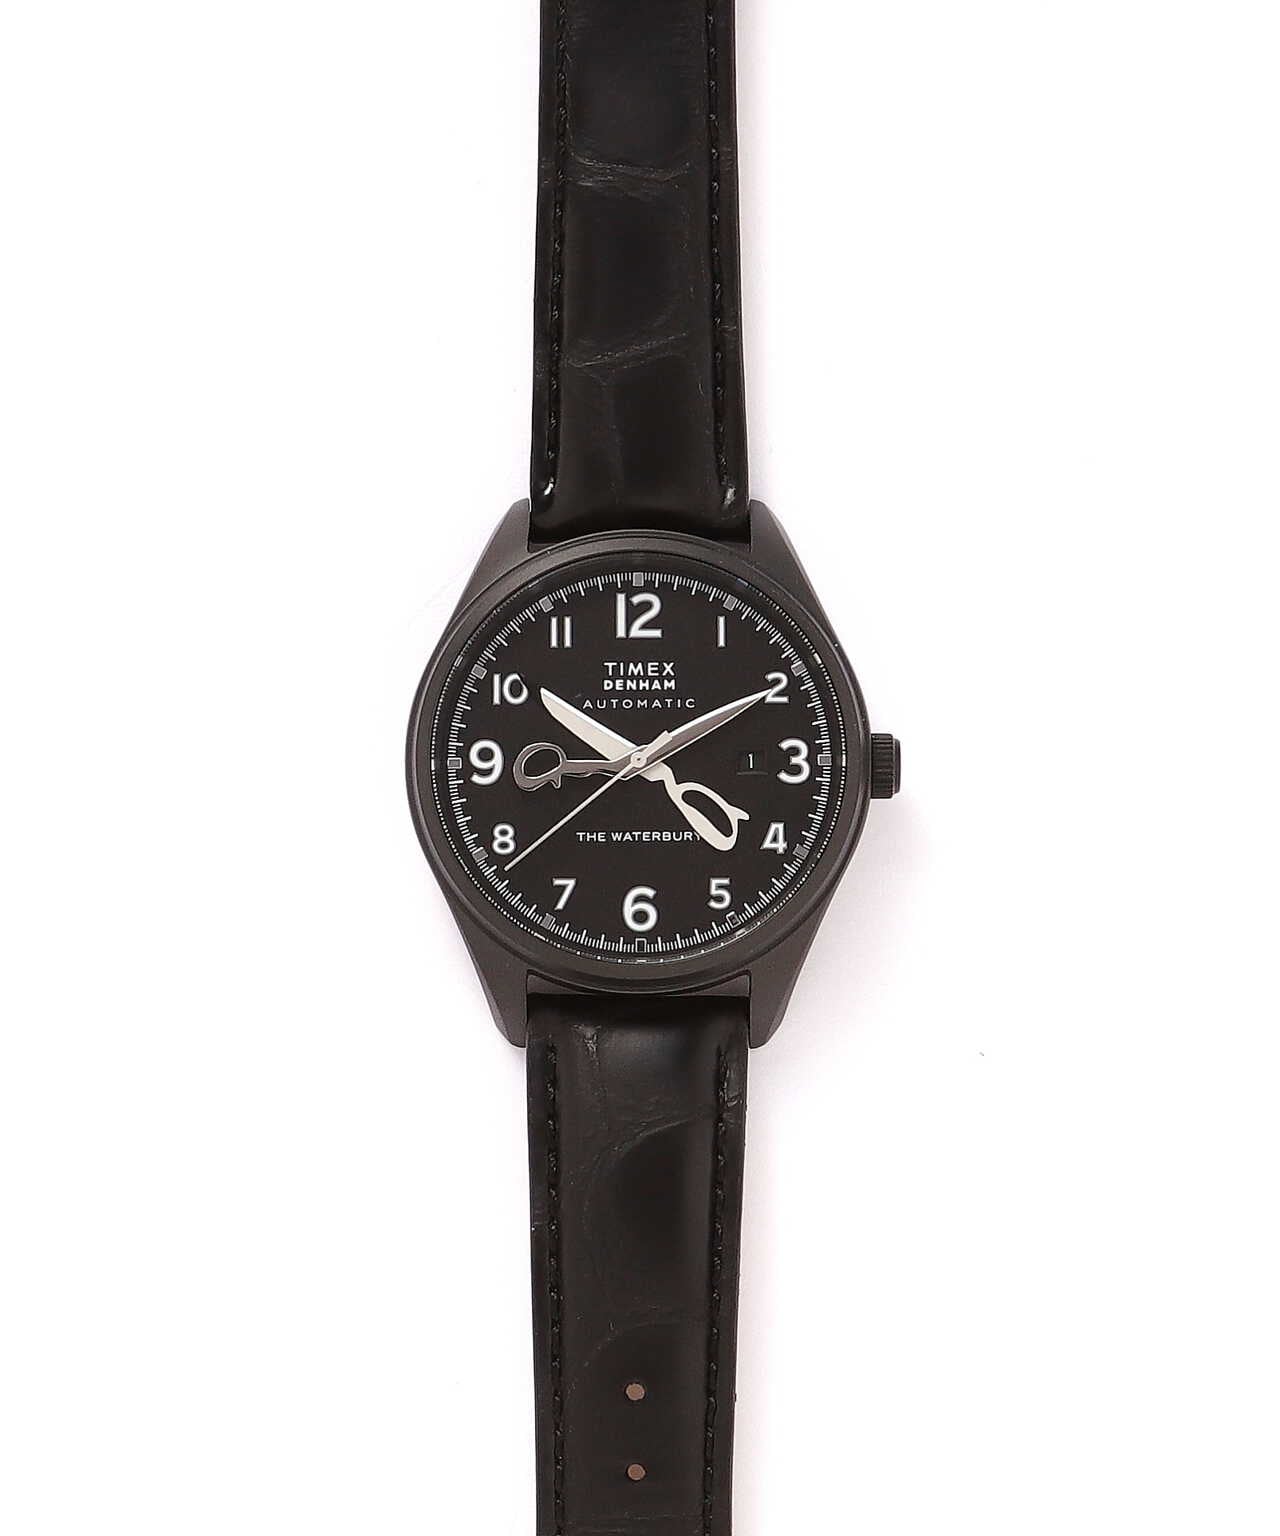 TIMEX DENHAM コラボモデル 時計 腕時計-